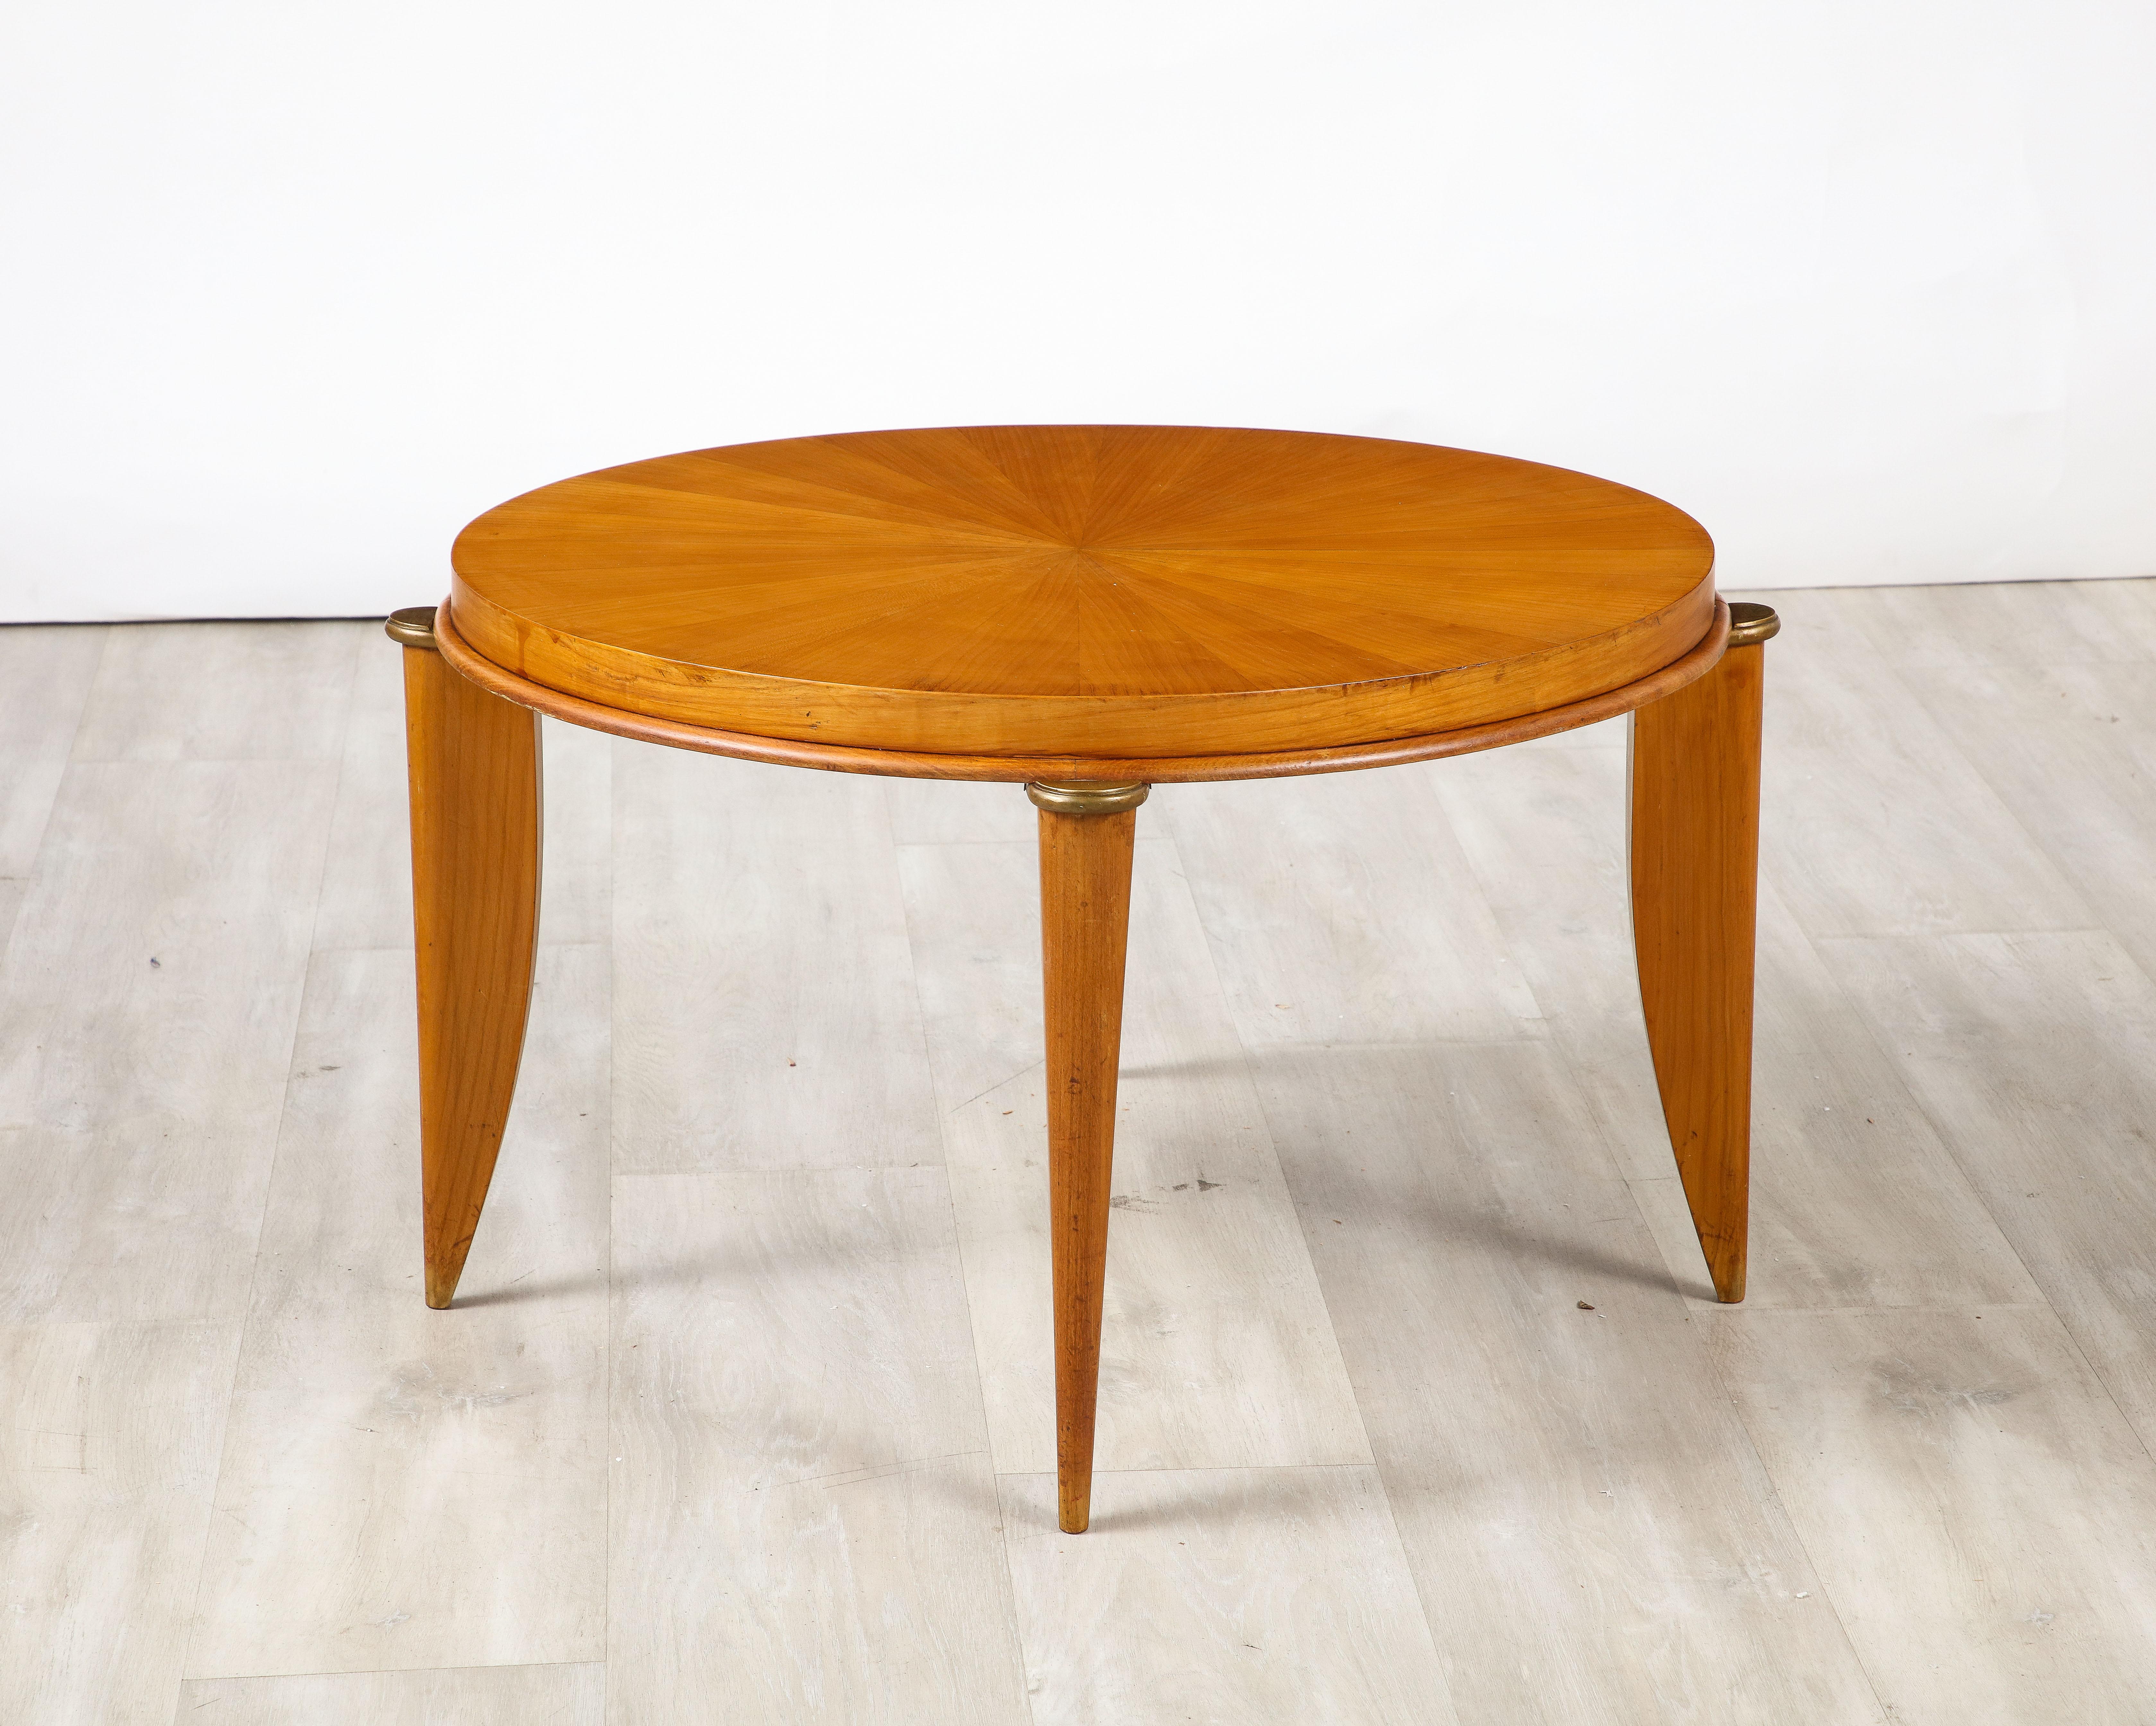 Une élégante table d'appoint ou table à cocktail Art déco française, conçue par Maurice Jallot ( 1900 -1971 ), vers 1940. La table est réalisée en érable sycomore et de construction très solide. Le plateau circulaire est soutenu par des pieds évasés